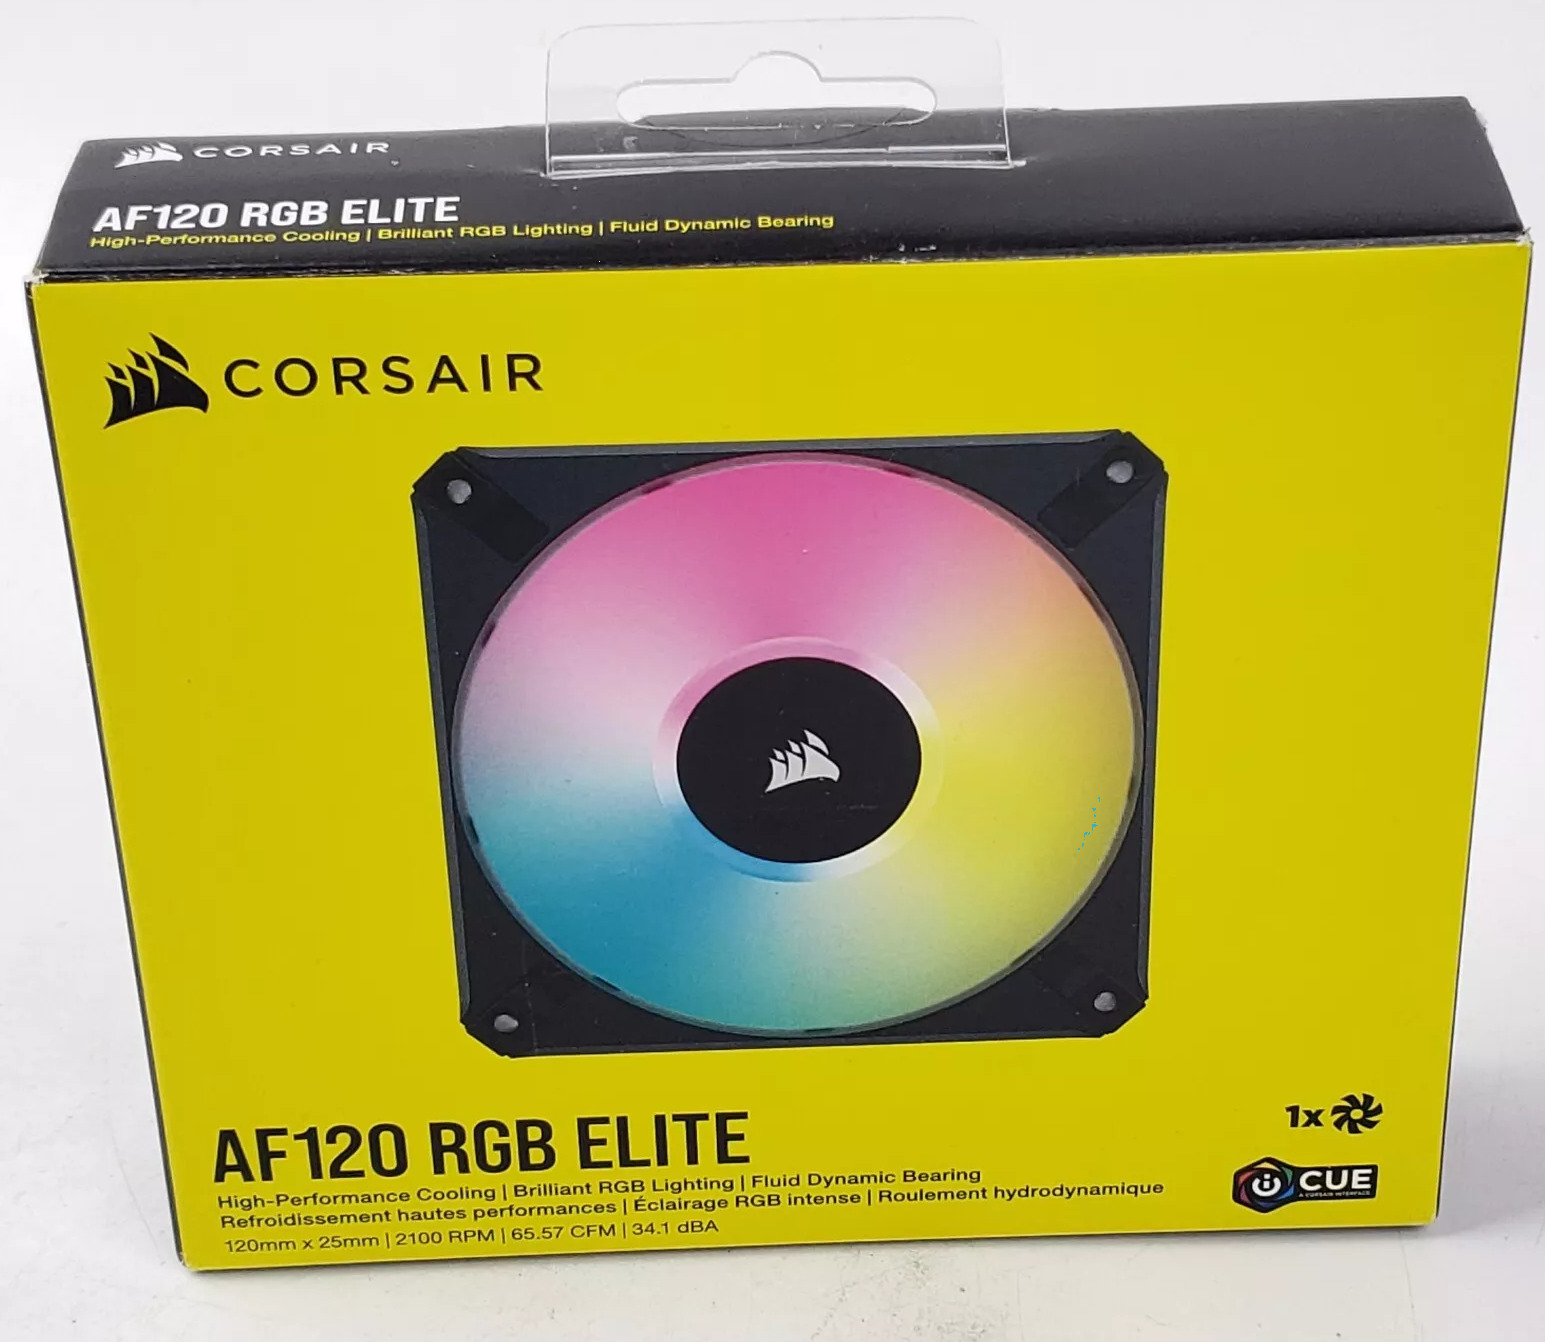 CORSAIR iCUE AF120 RGB ELITE 120mm Case Fan - Black (1-Pack), New, Sealed